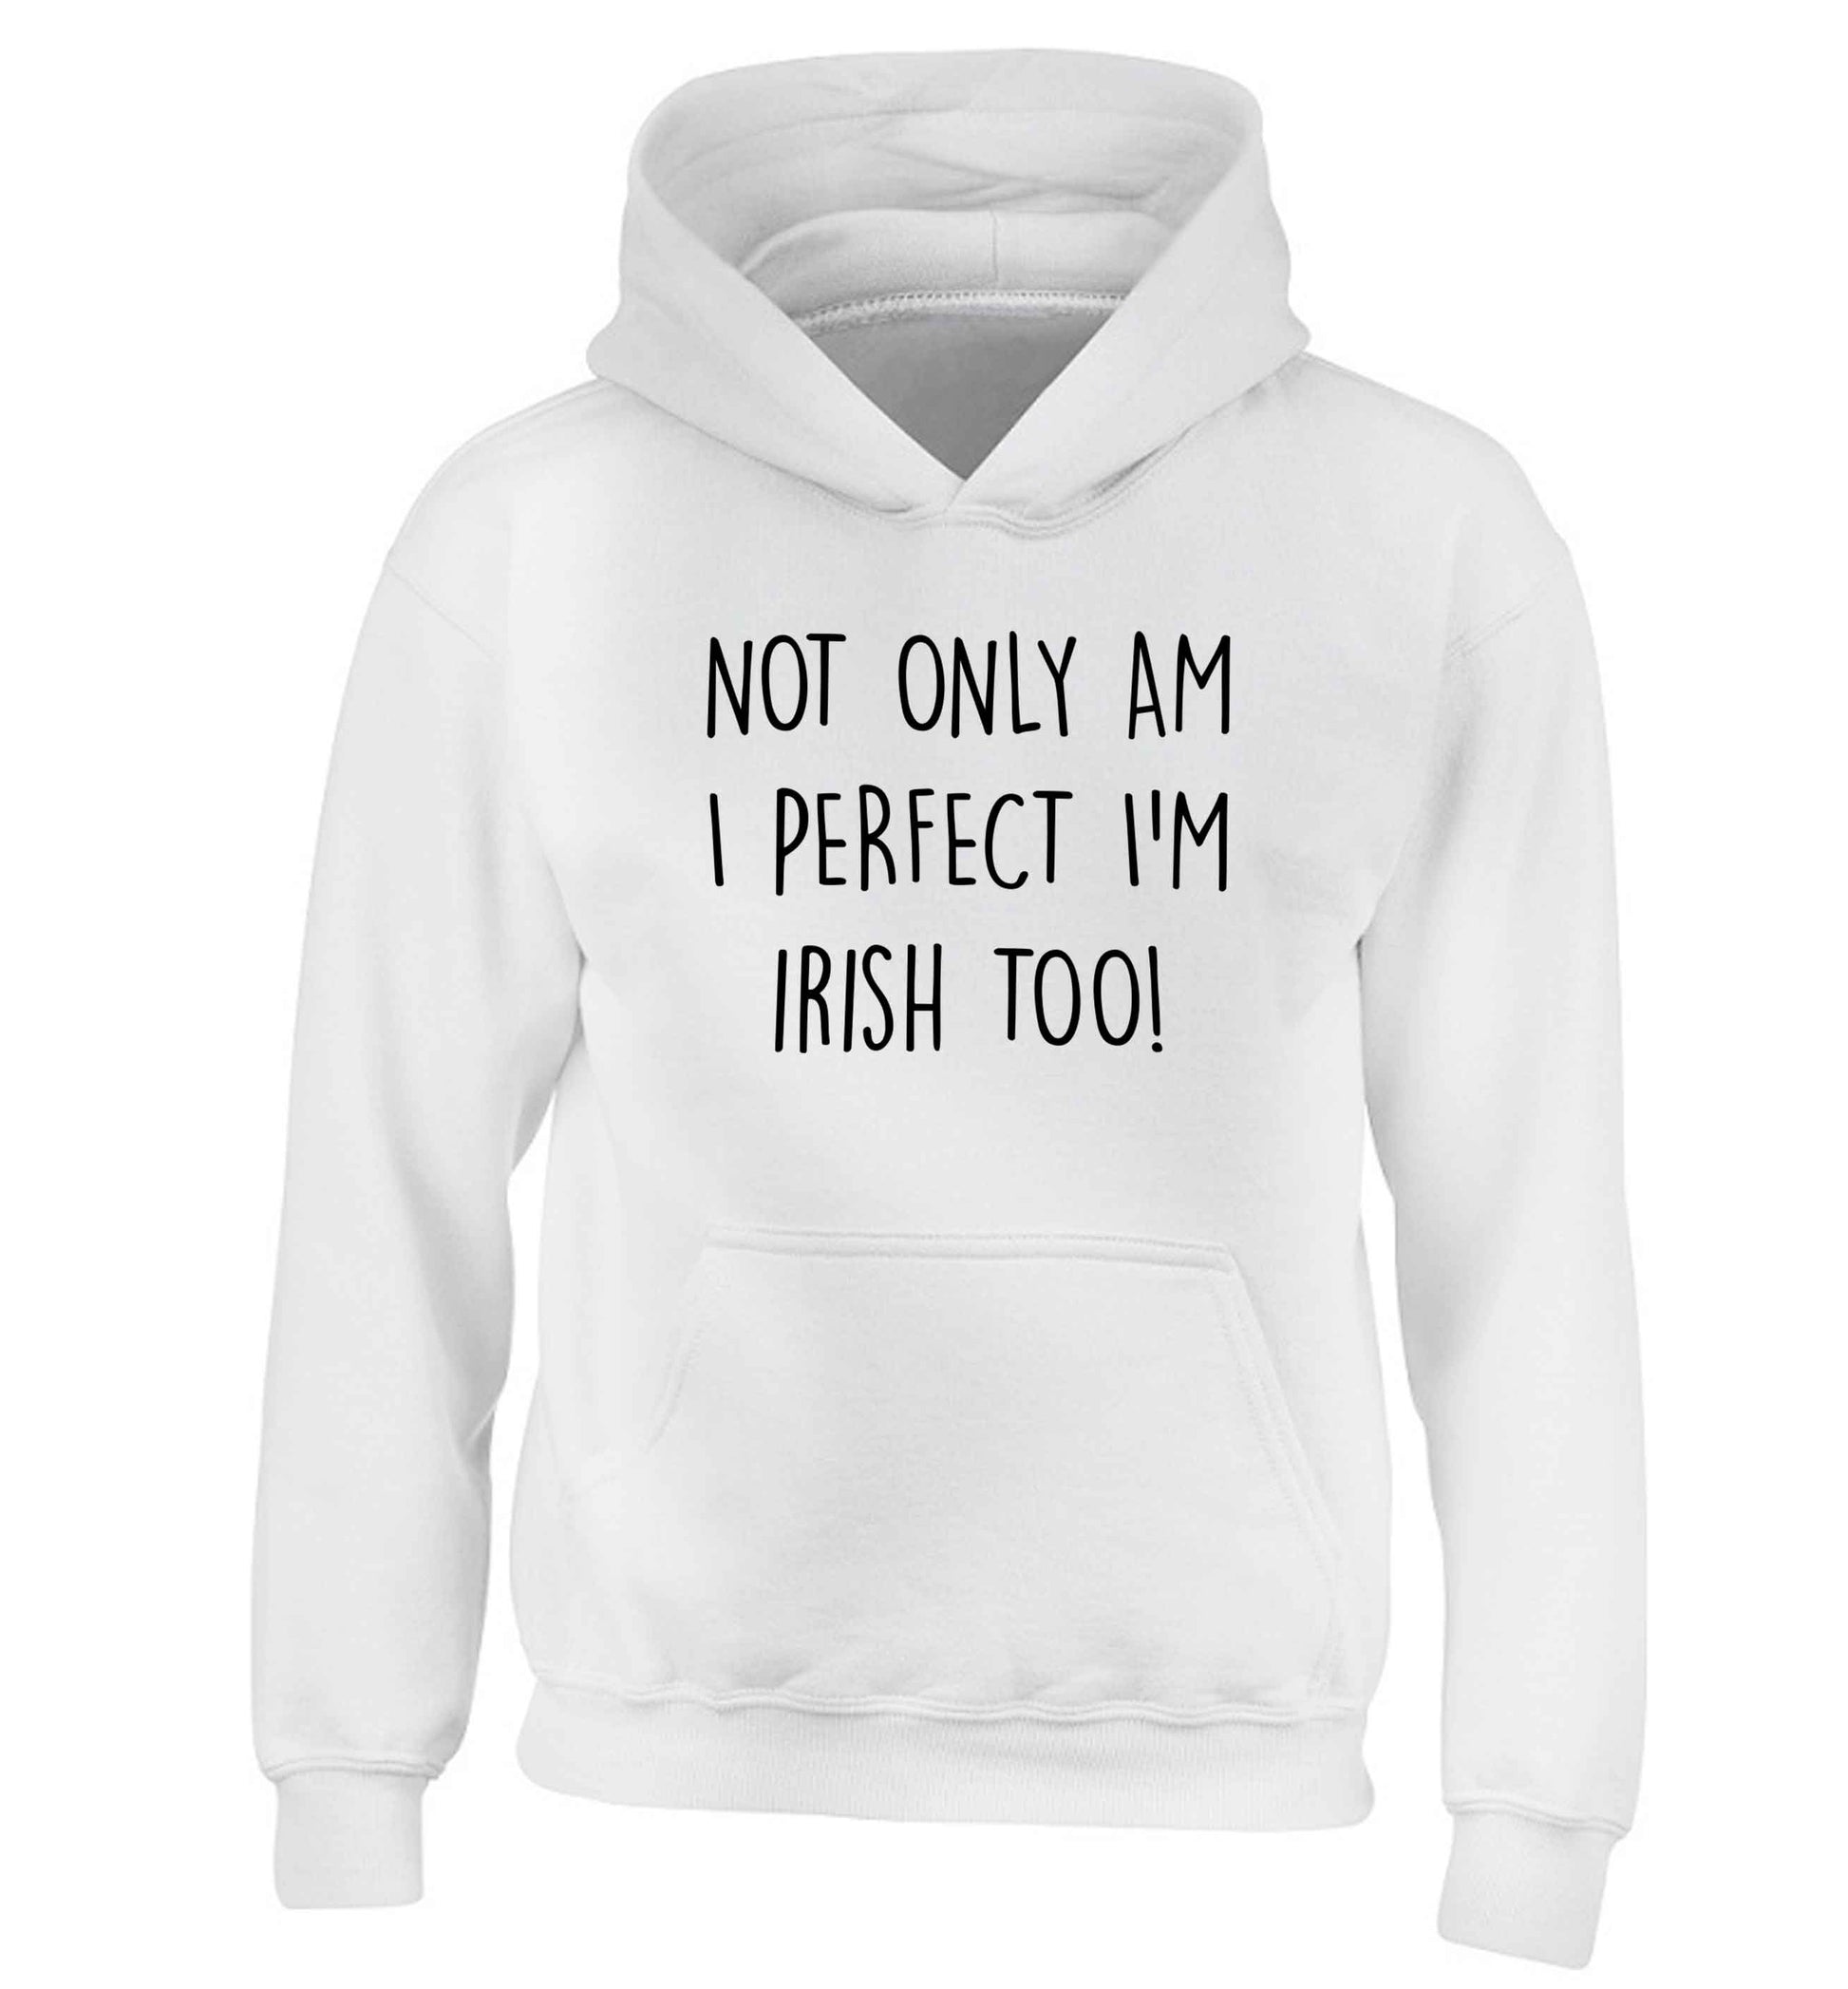 Not only am I perfect I'm Irish too! children's white hoodie 12-13 Years